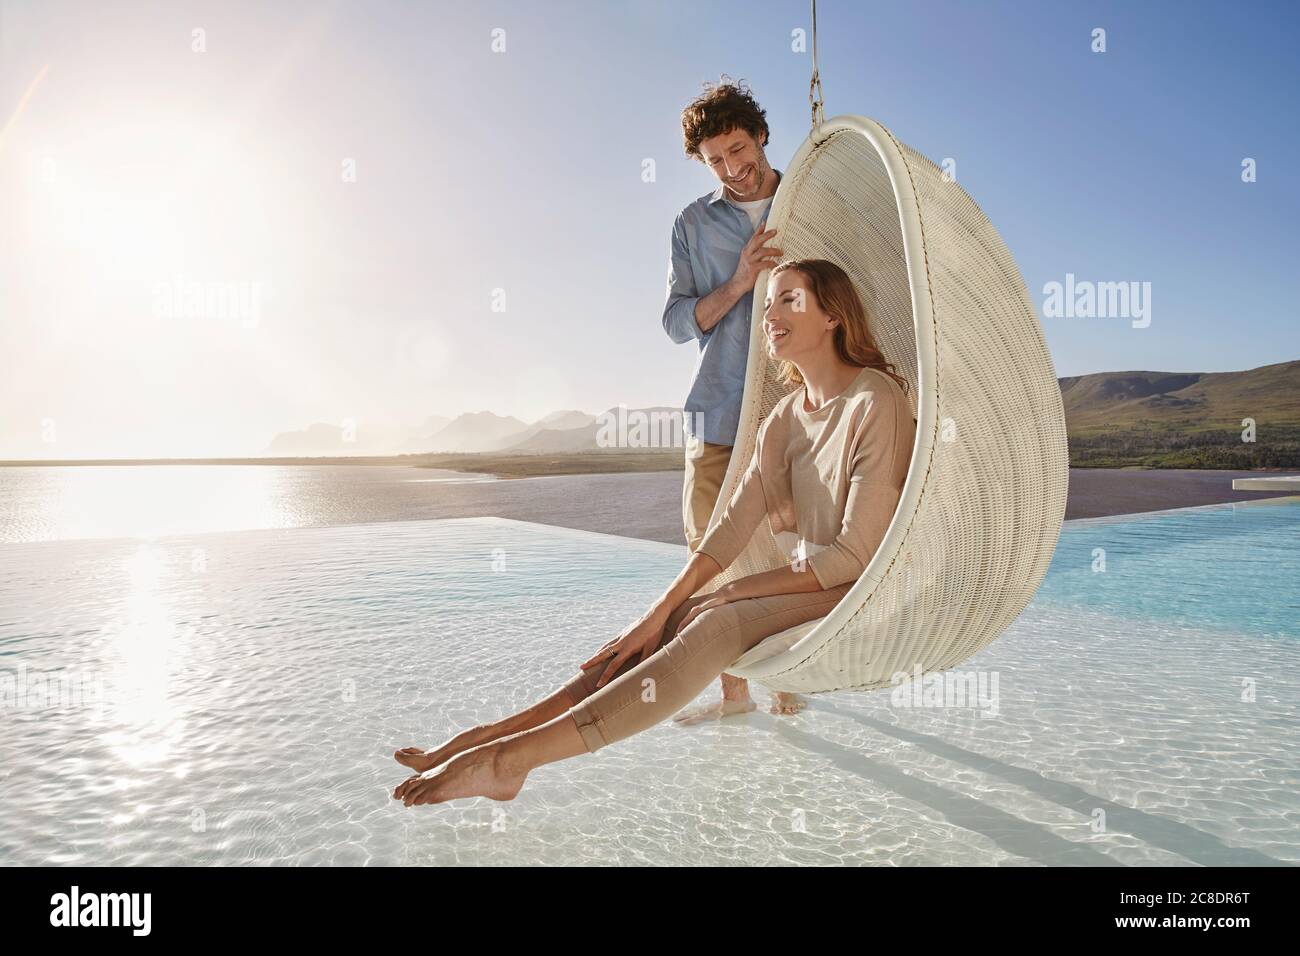 Felice coppia con donna seduta in sedia sospesa sopra nuoto piscina Foto Stock